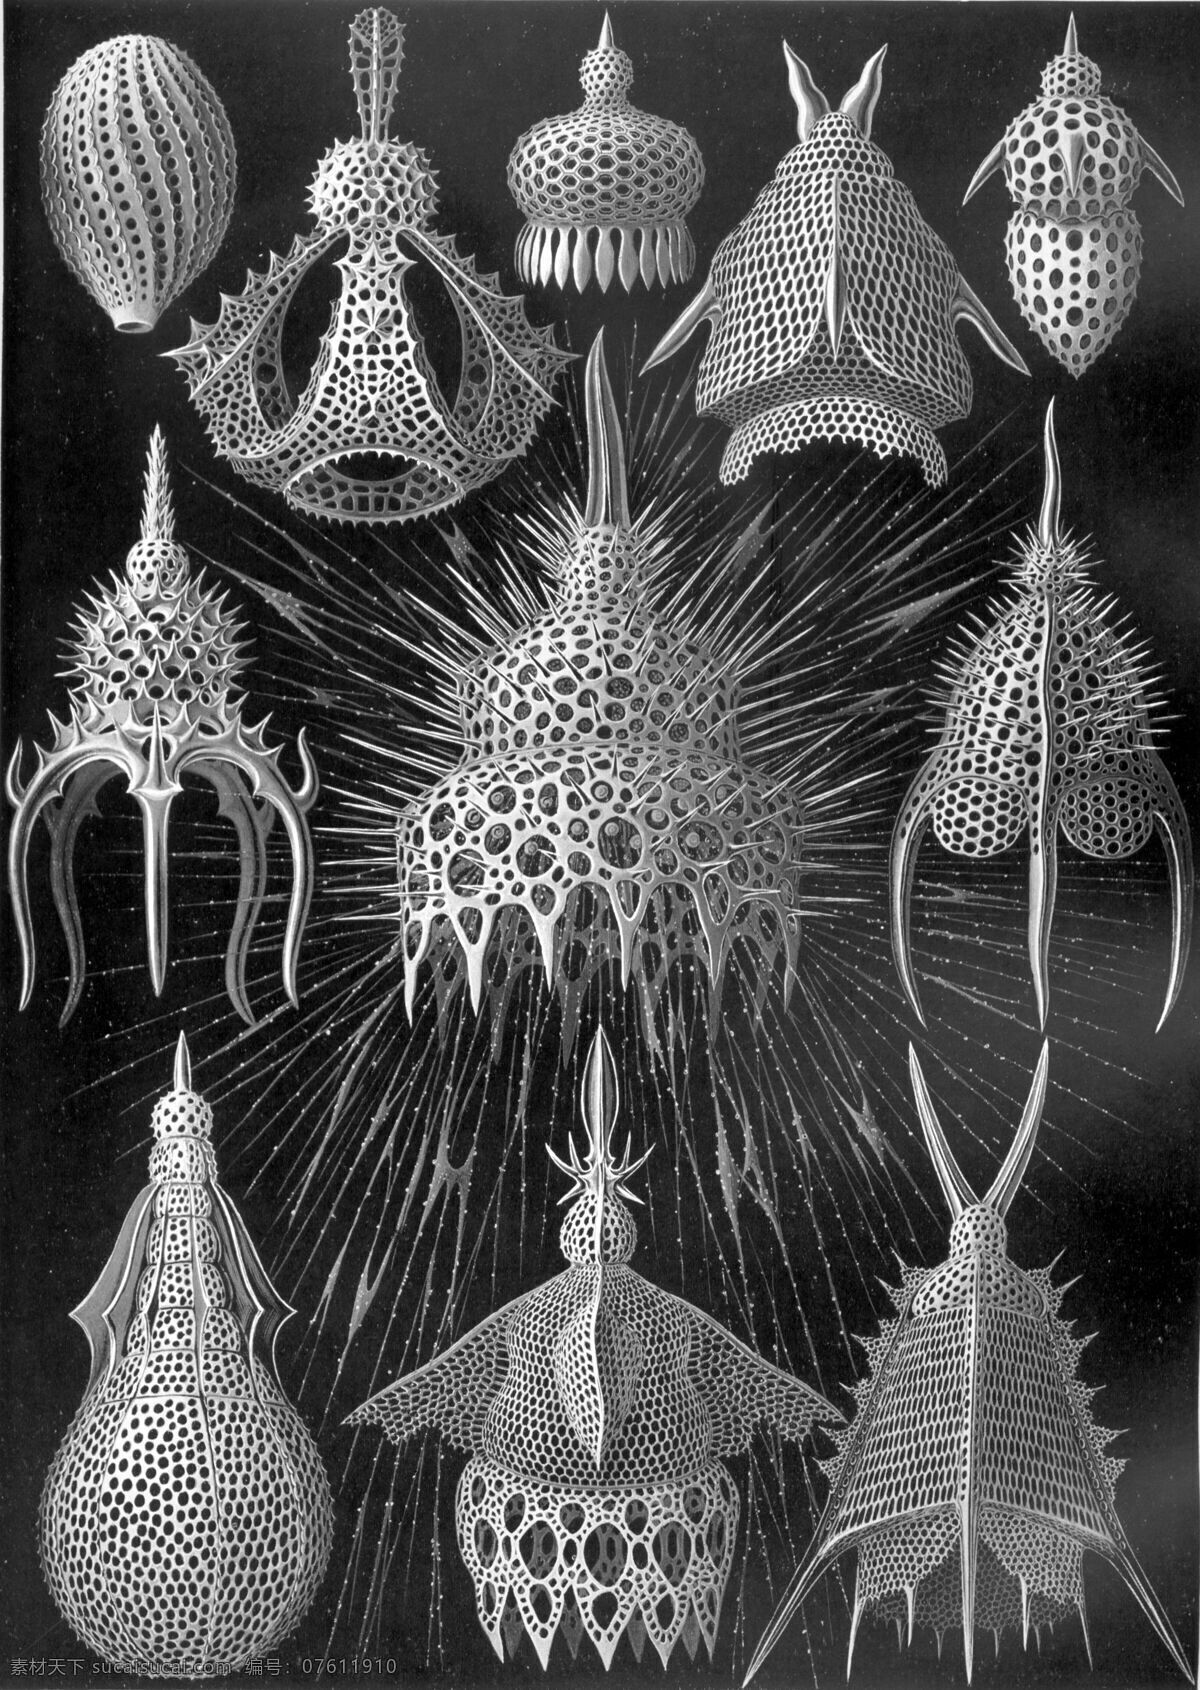 古生物 生物草图 海洋生物 平版印刷 恩斯特海克尔 生物 素描 绘画书法 文化艺术